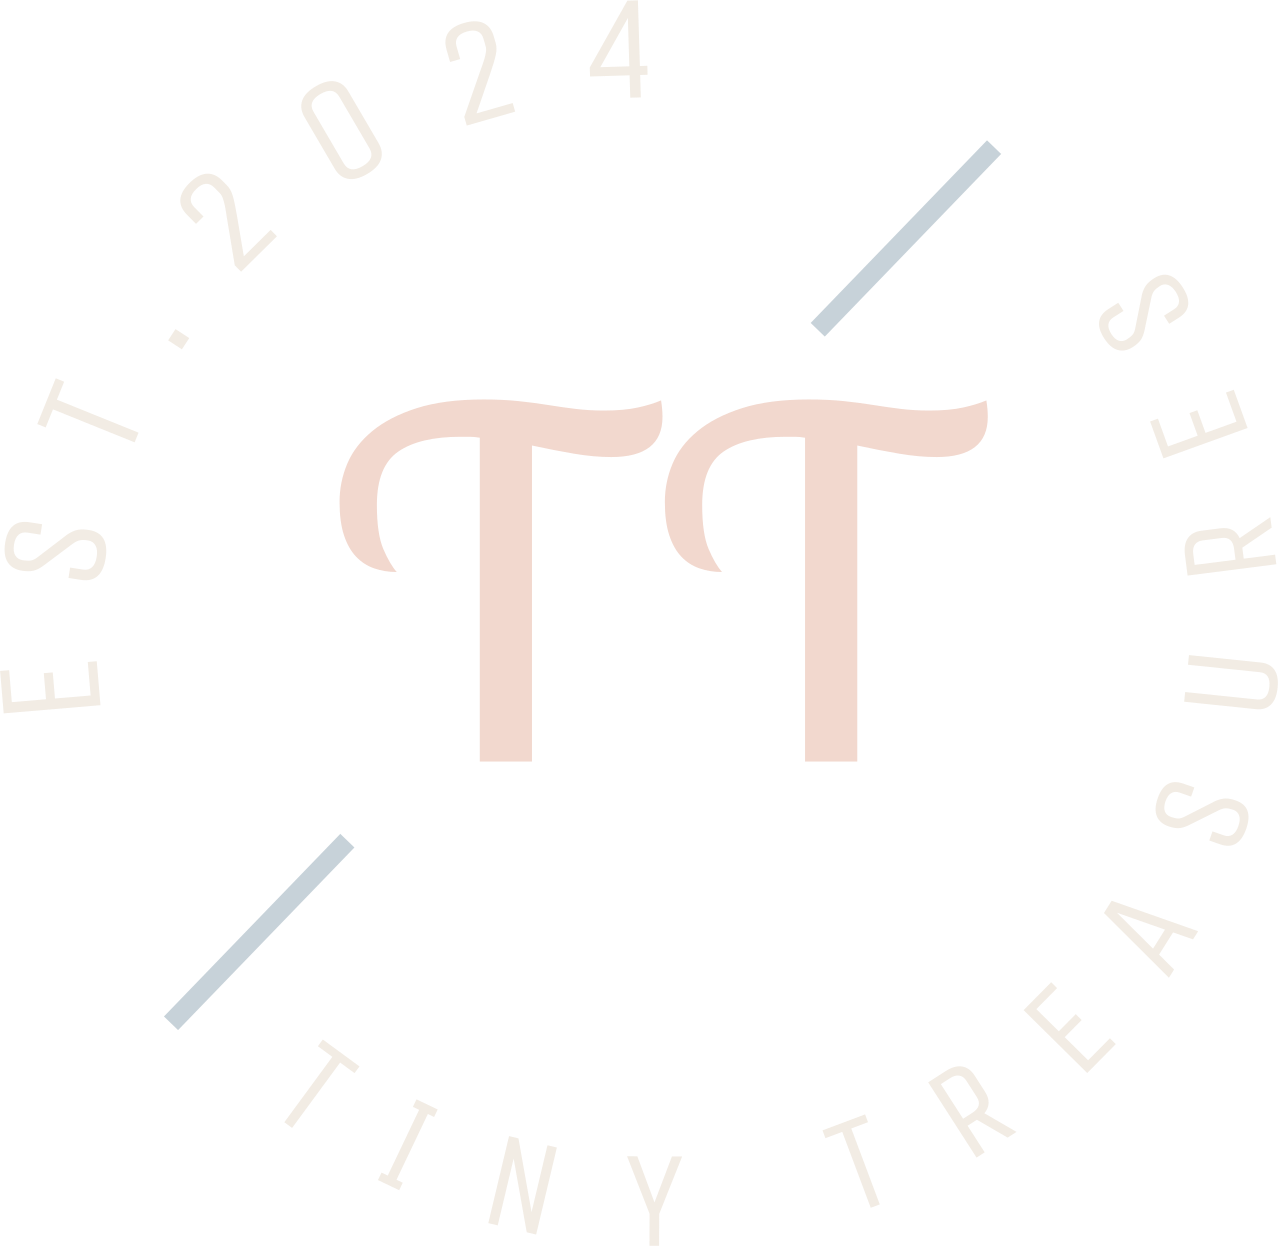 TINY TREASURES 's logo